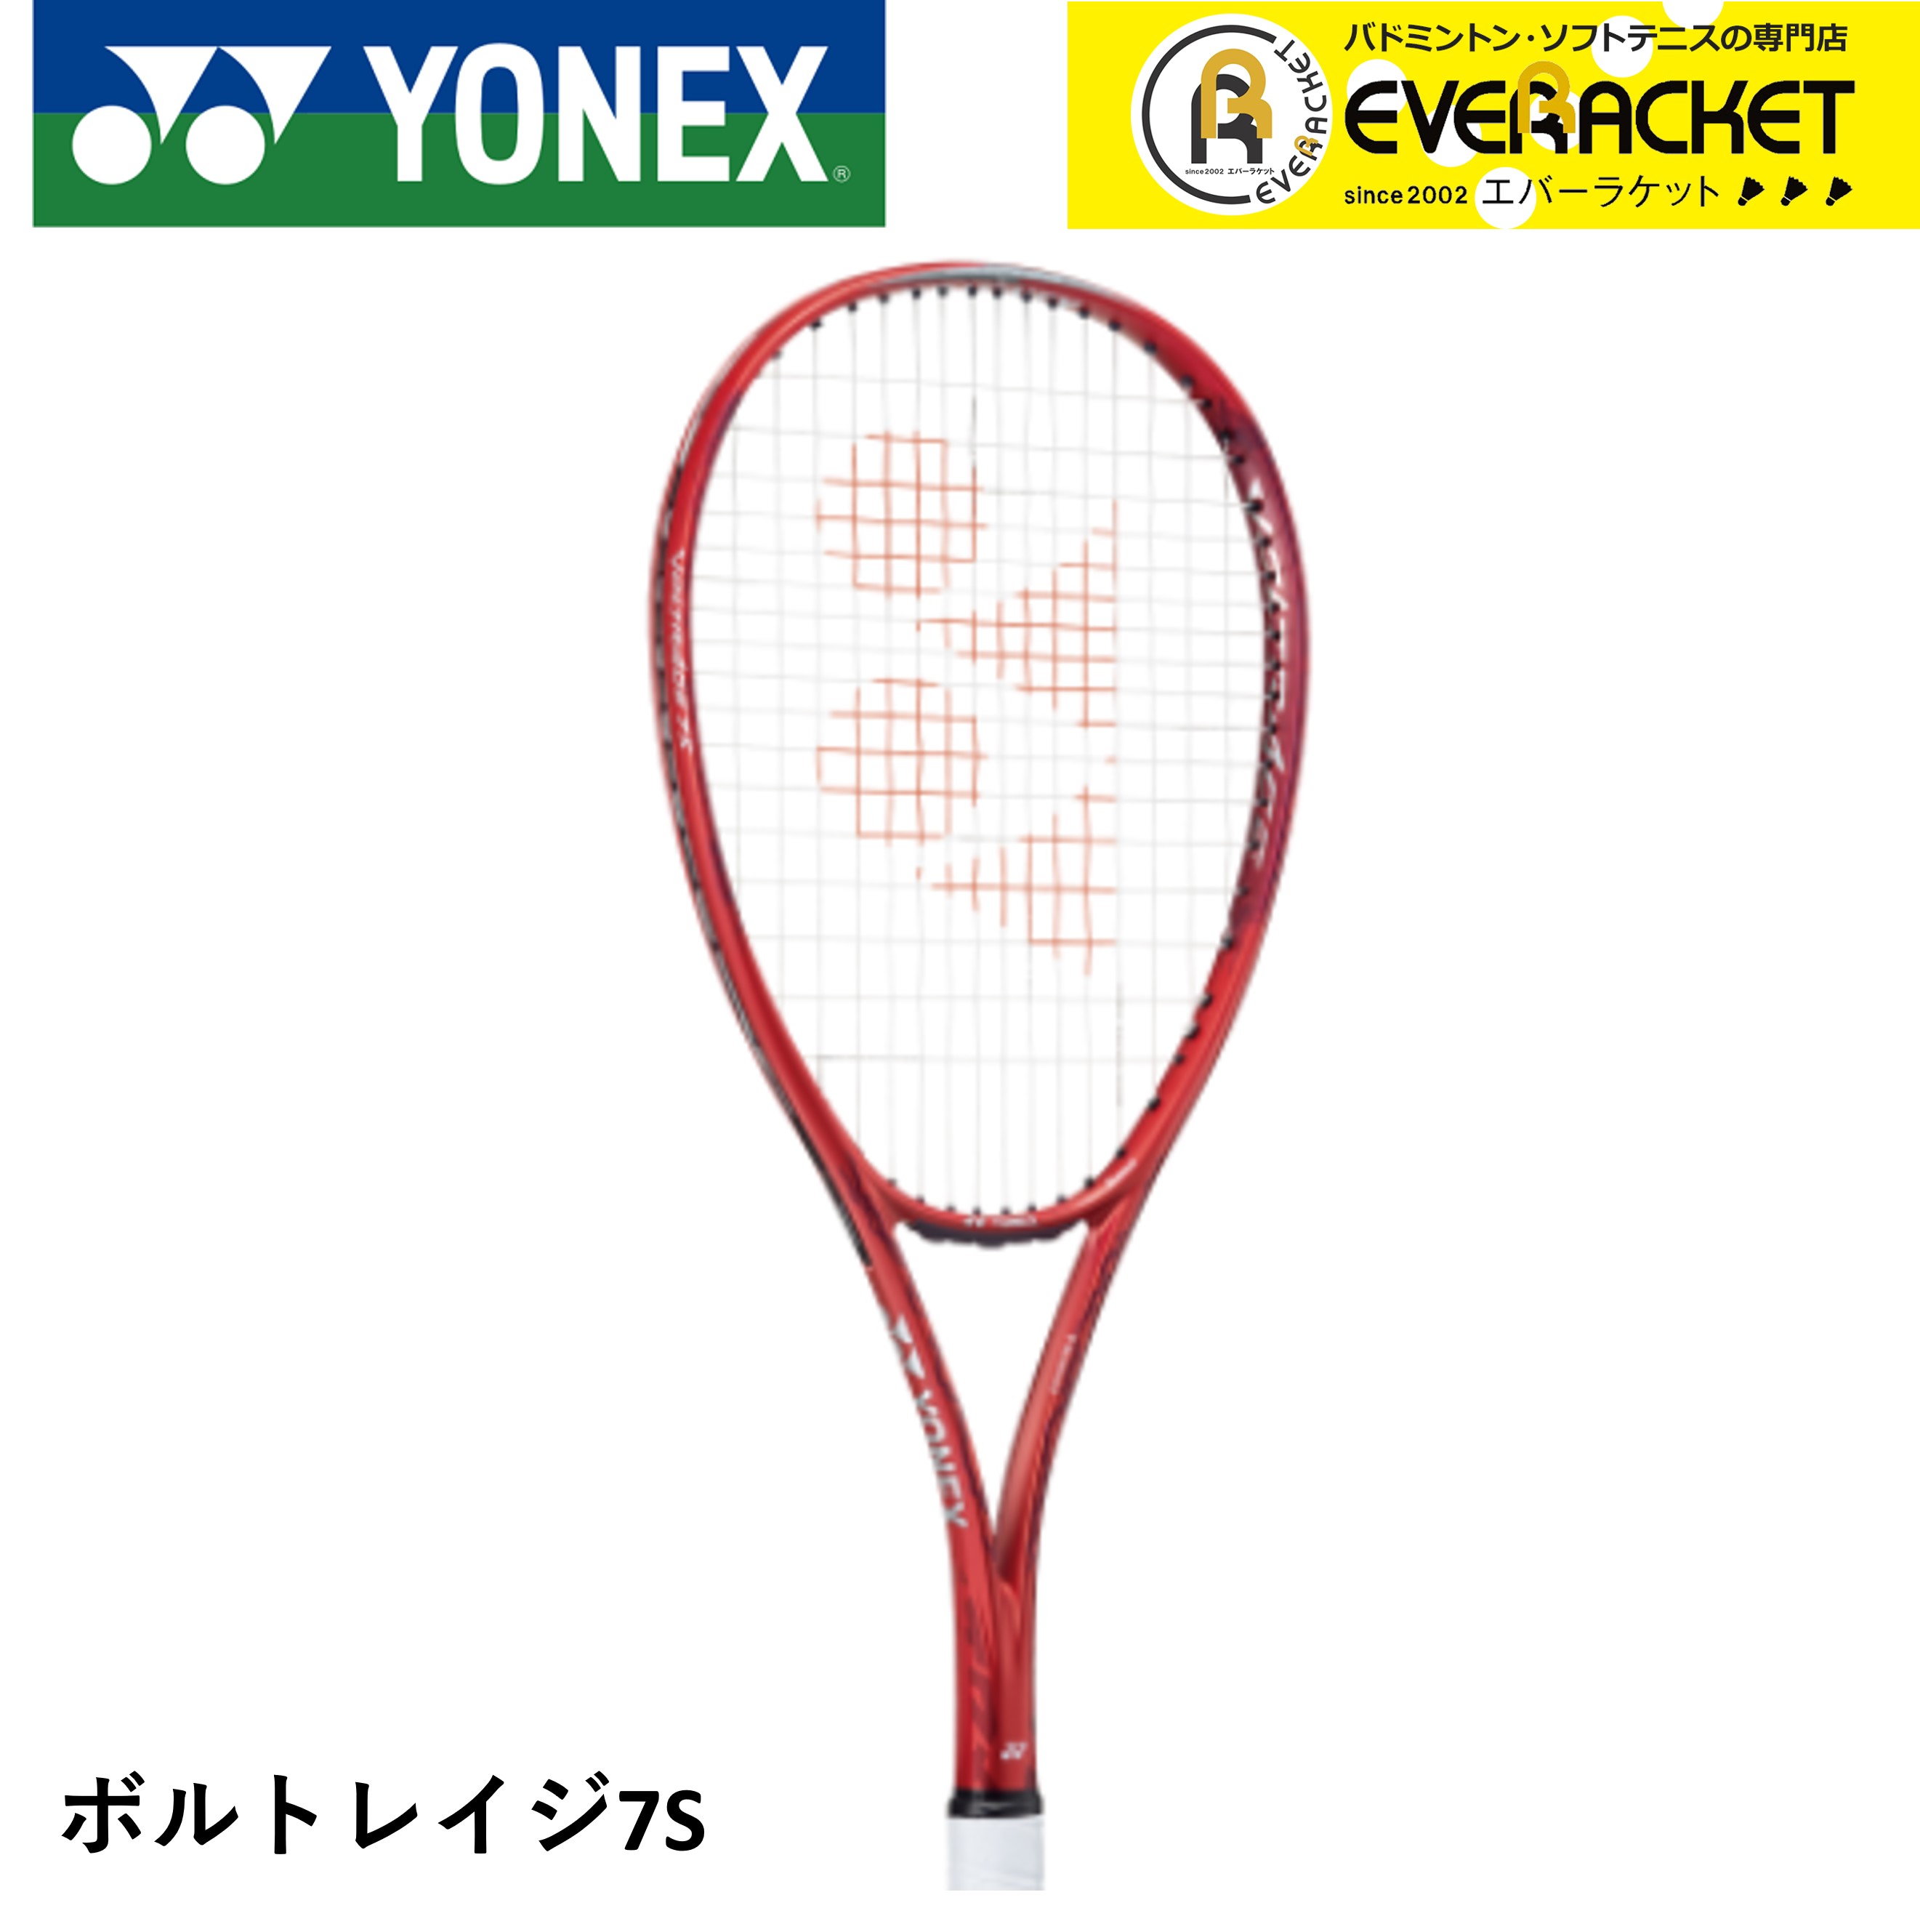 2021年 YONEX ヨネックス バドミントン ソフトテニスラケット VR7S ボルトレイジ7S 誠実